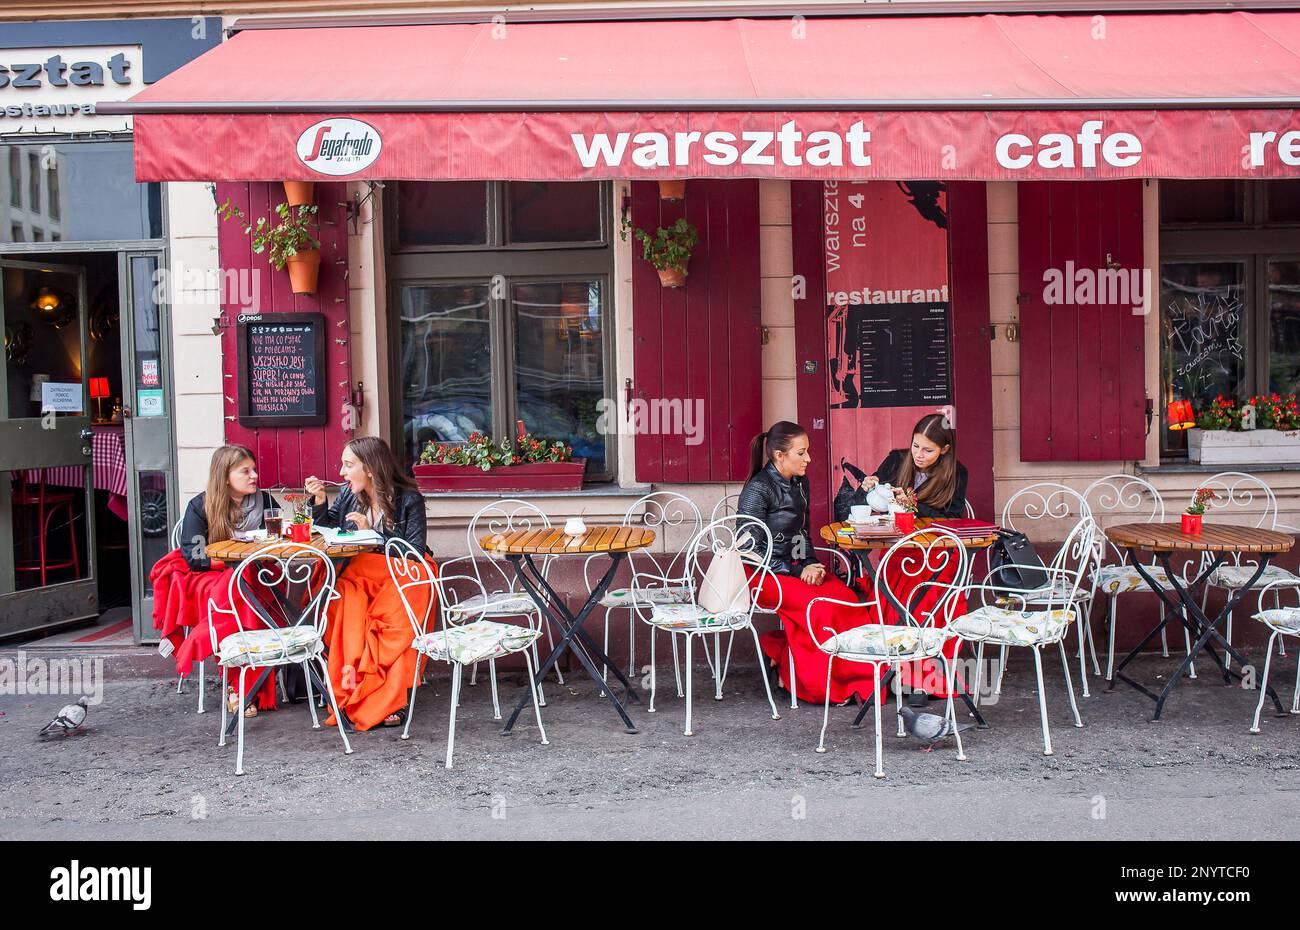 Cafe Warsztat, Izaaka 3, Kazimierz district, Krakow, Polonia Stock Photo